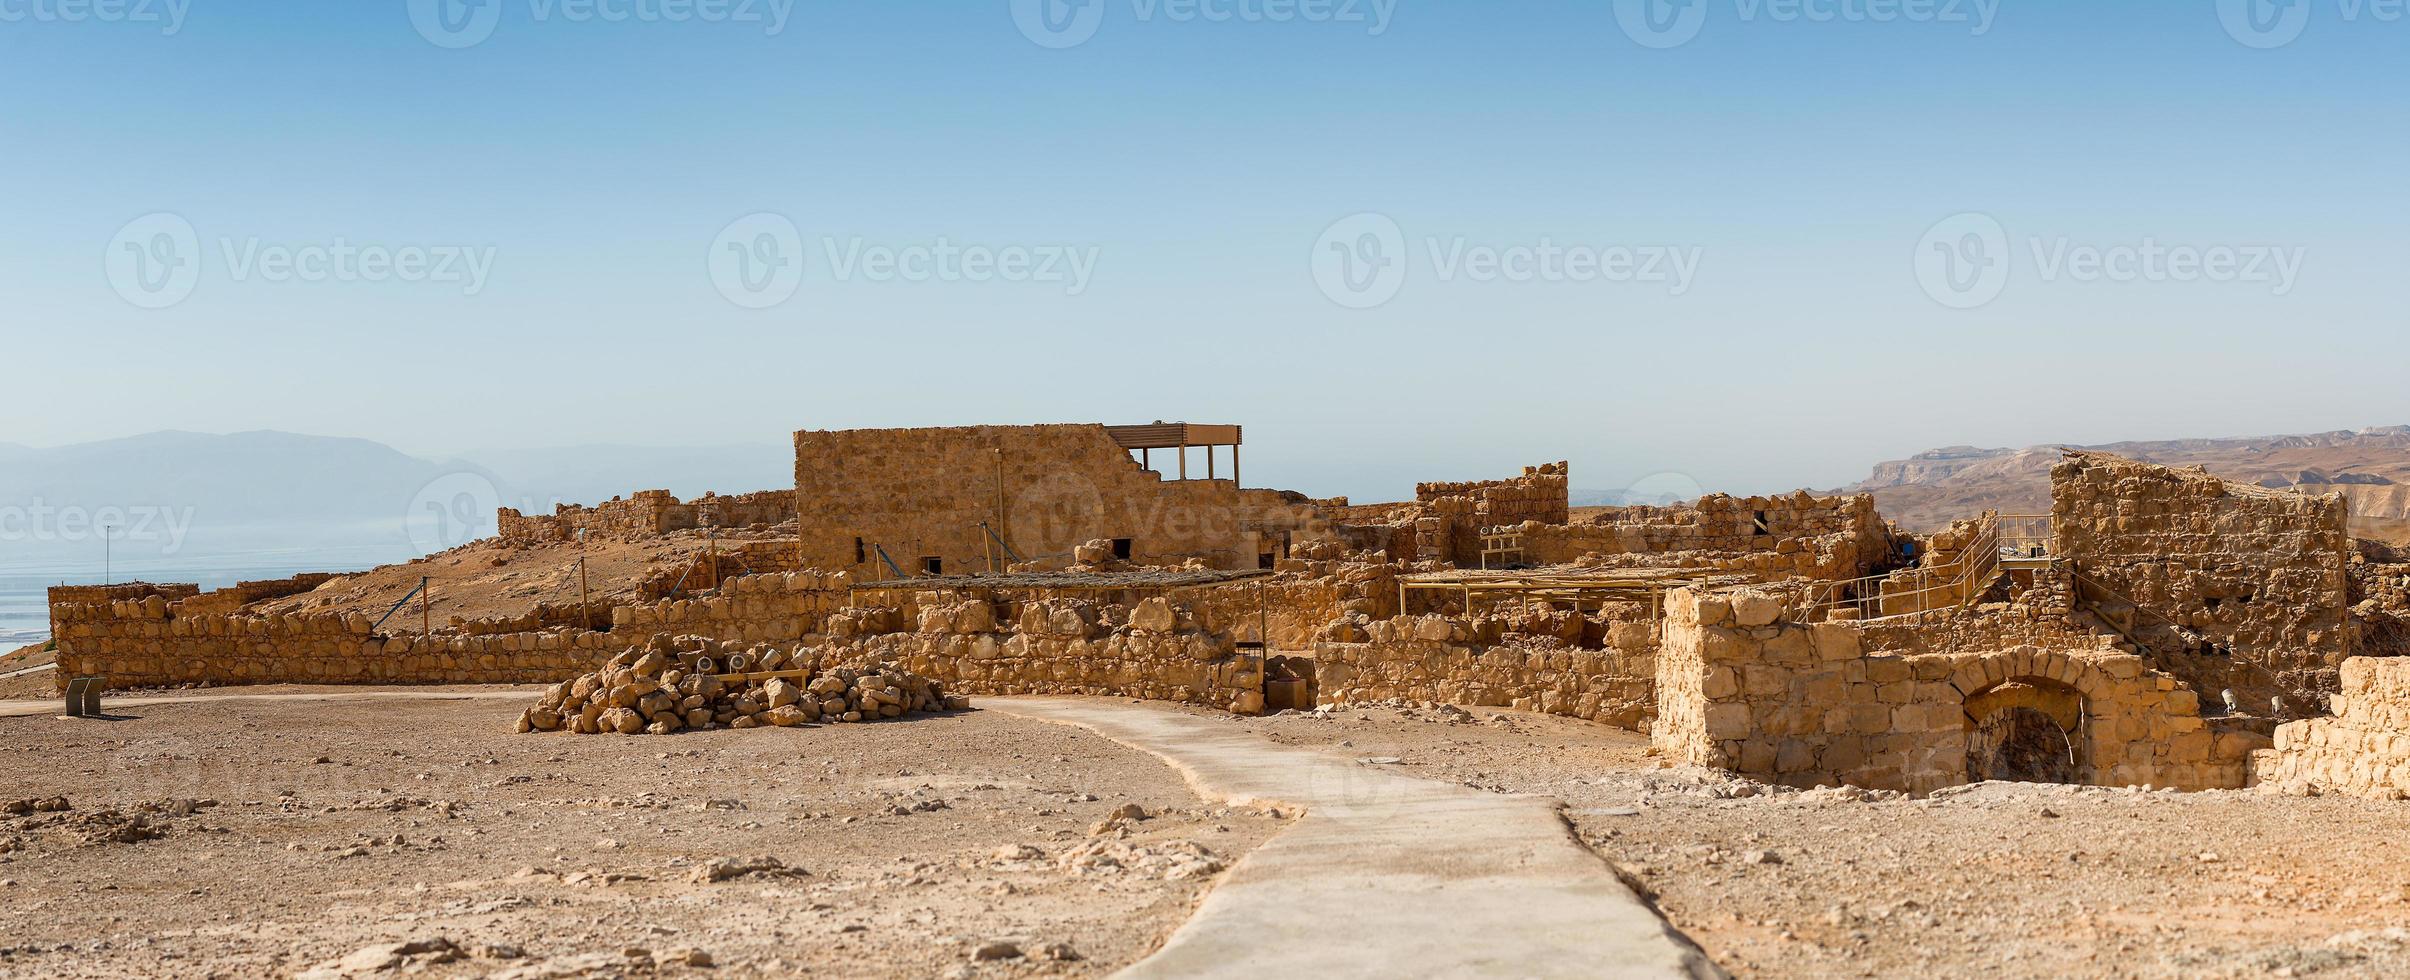 ruïnes van masada, oude verrijking in de zuidelijk wijk van Israël foto